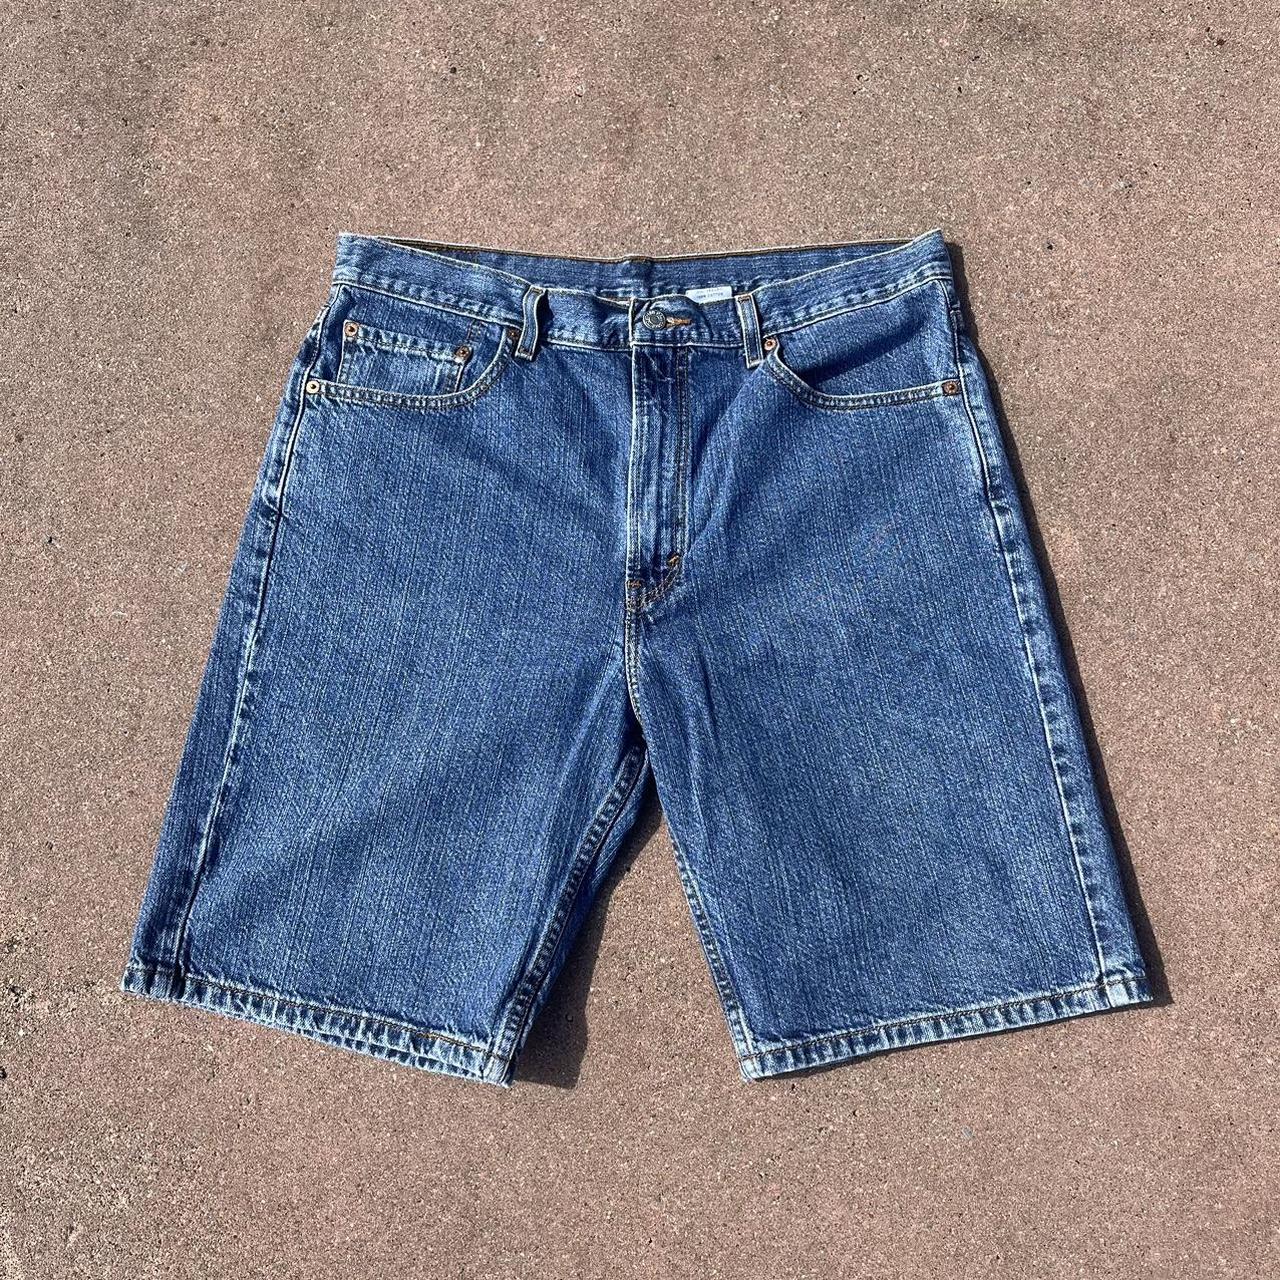 Levi’s 505 Jeans Shorts Size : 36W Condition :... - Depop